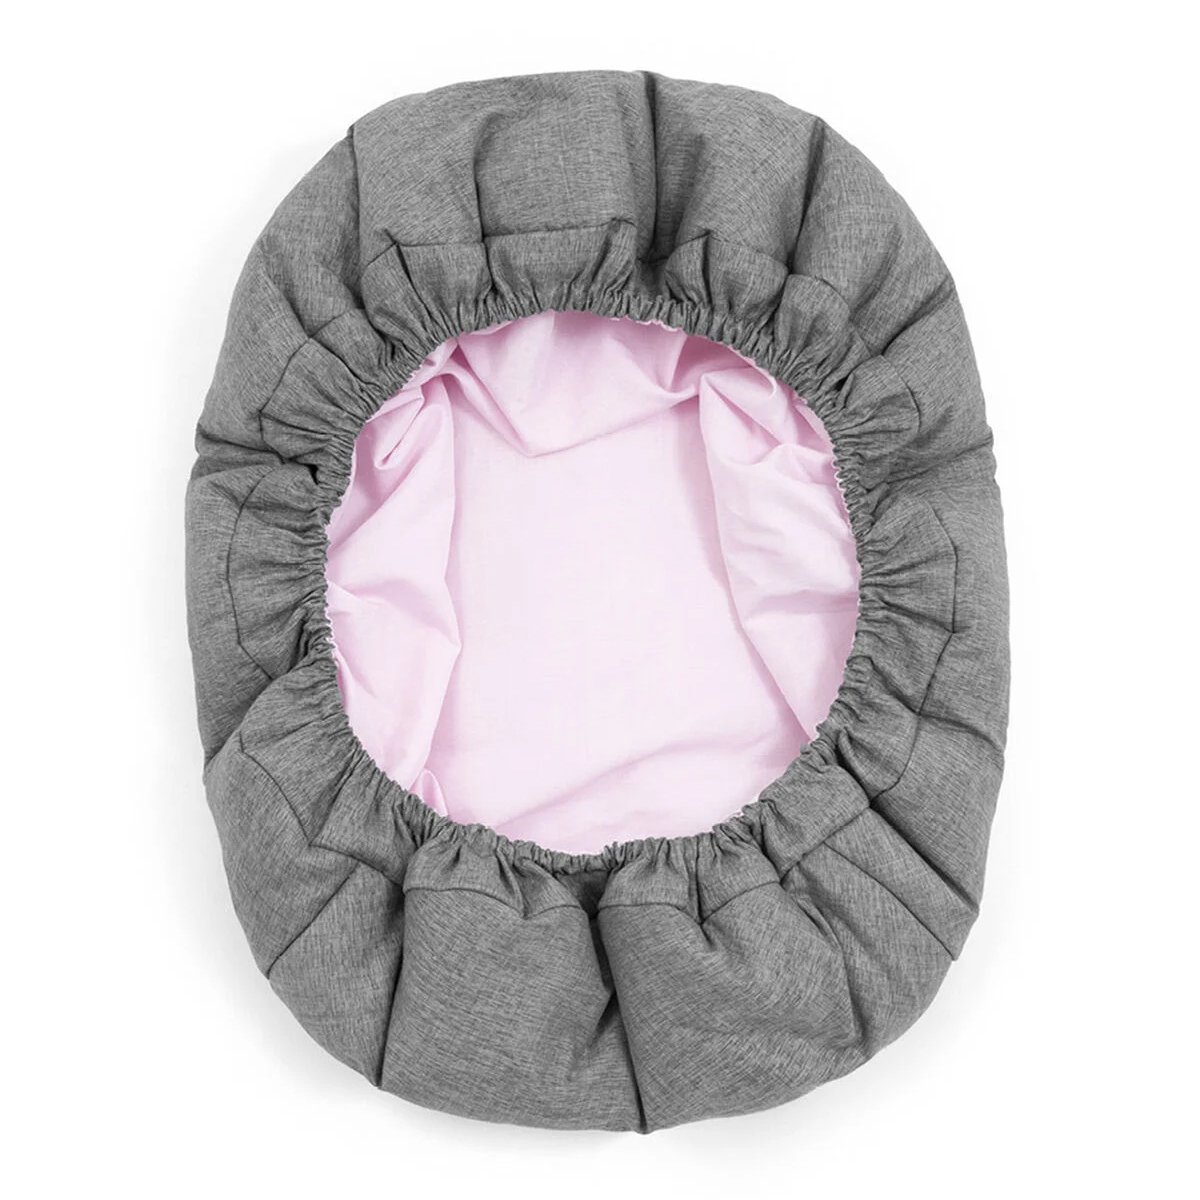 Шезлонг для новорожденного Stokke Nomi Newborn Set Black/Grey Pink (625902) - фото 5